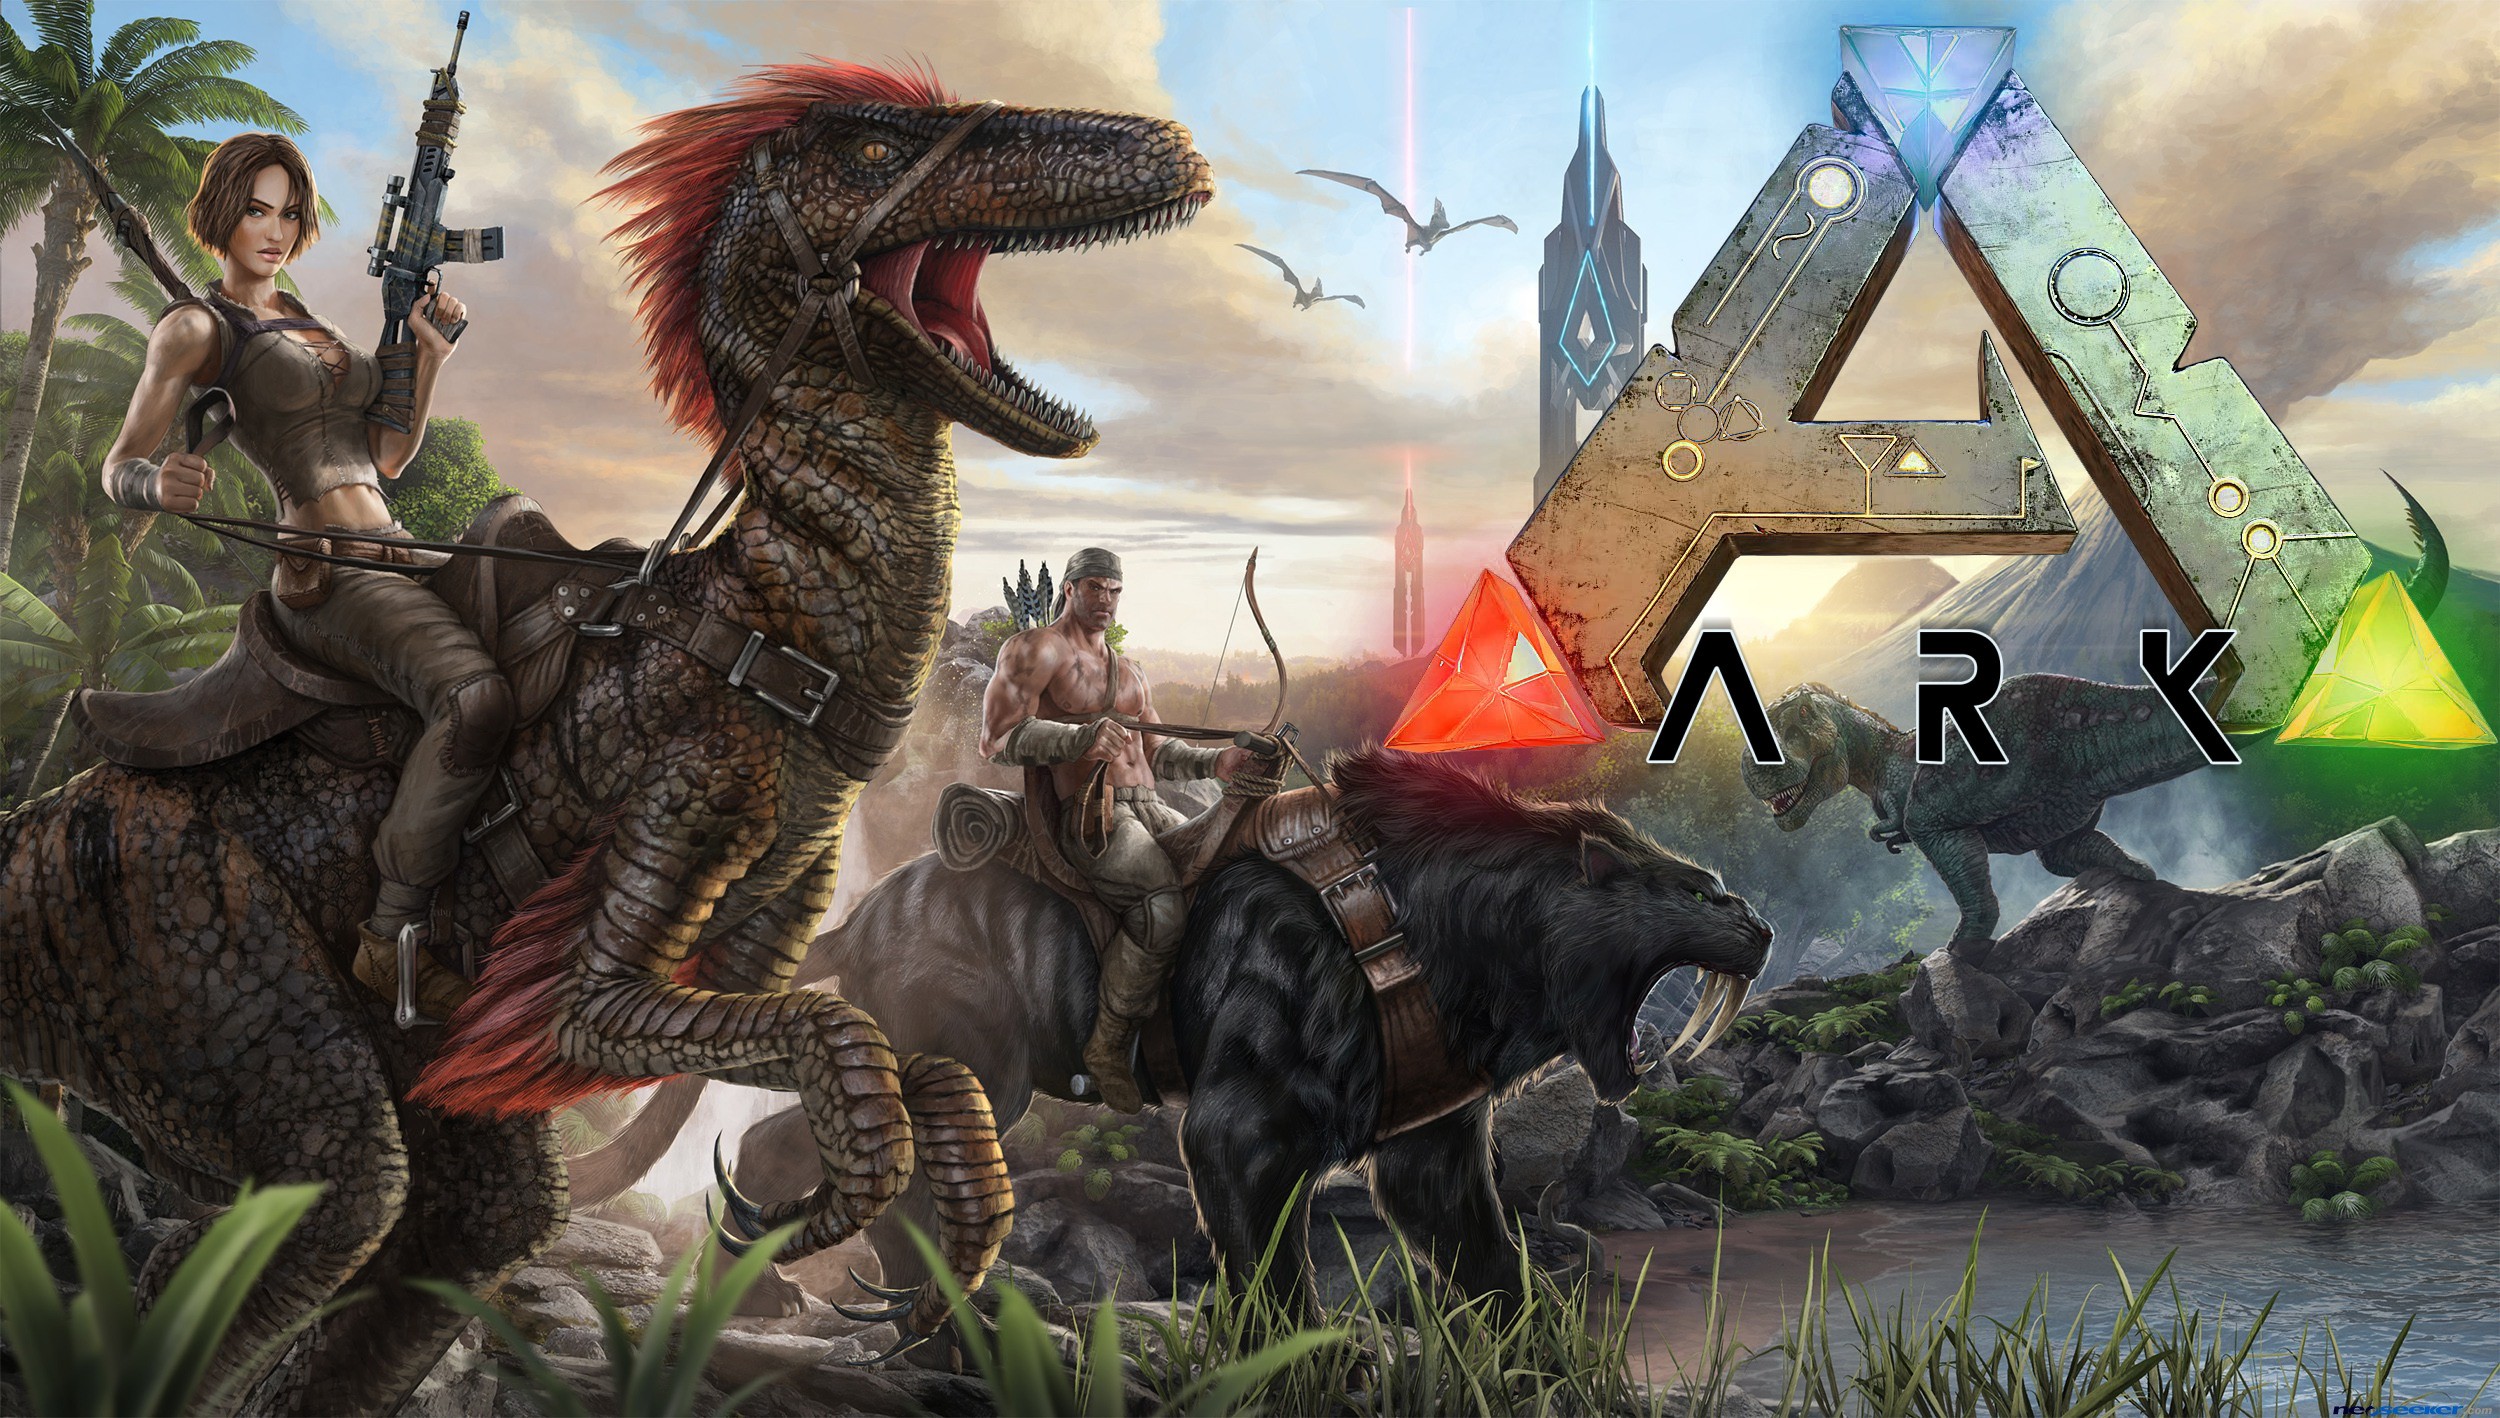 Бесплатный арк сурвайвал эволв. Игра Ark Survival Evolved. Арка сурвайвал ЭВОЛВ. АРК сурвайвал арт. АРК сурвивал эволвед мобайл.